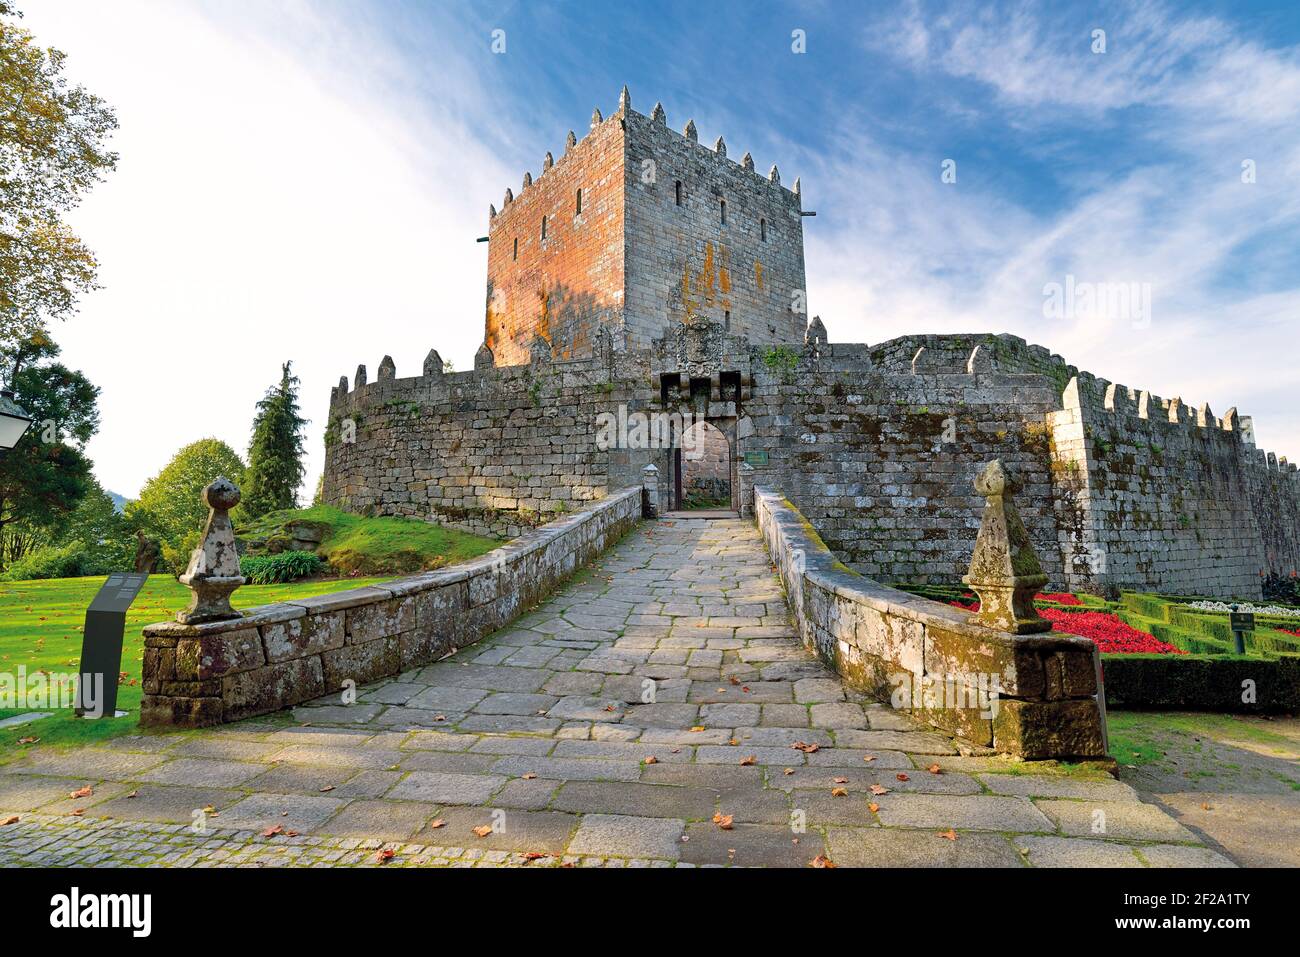 Entrée principale du château médiéval impressant avec tour et jardins autour Banque D'Images